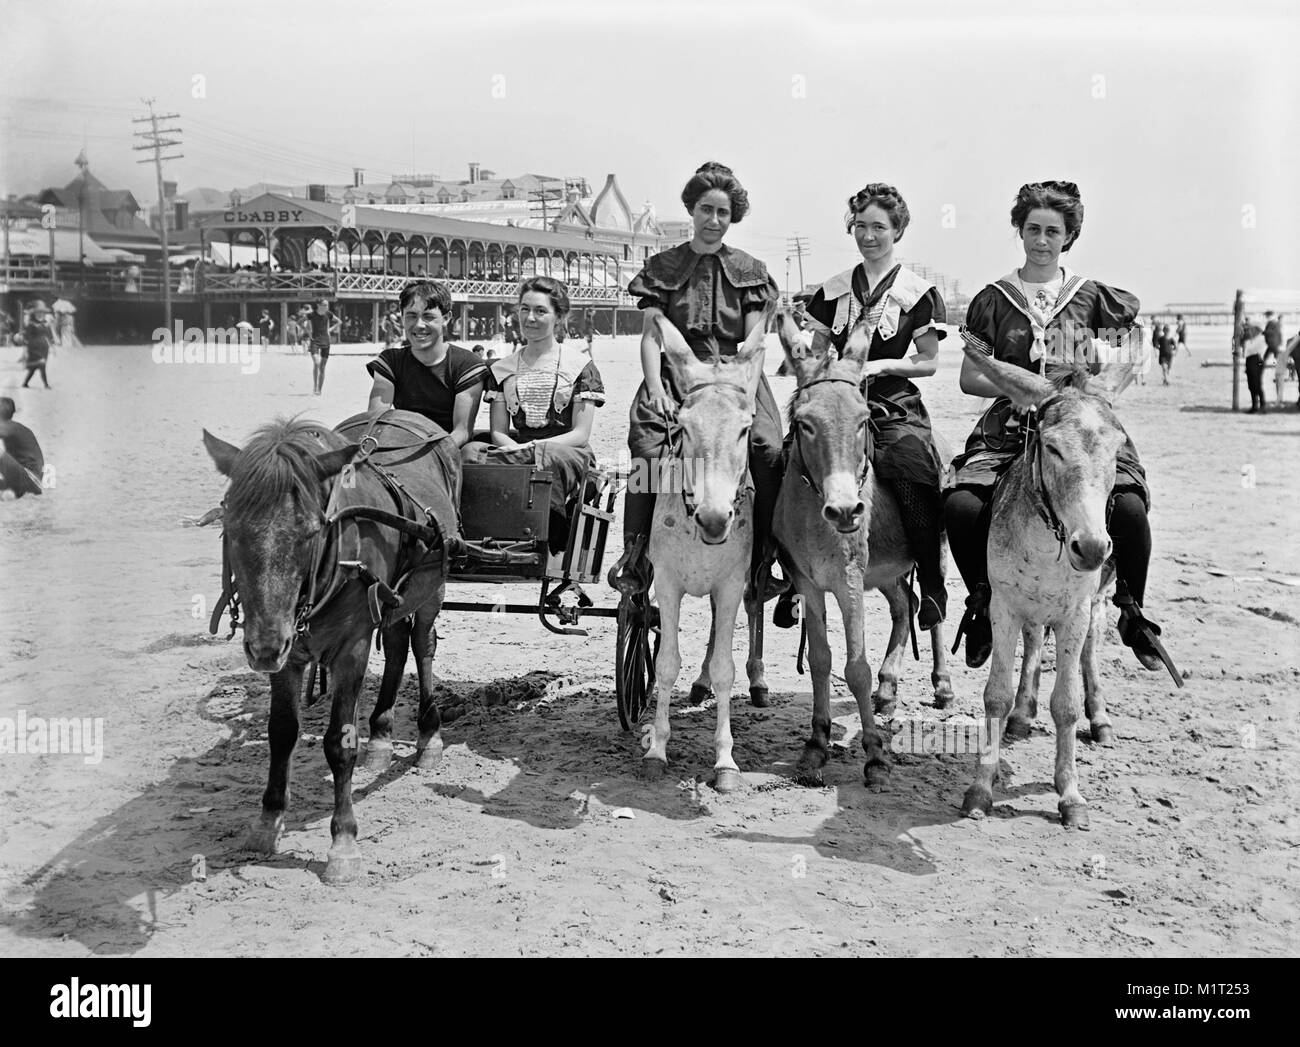 Carrello pony e asini sulla spiaggia, Atlantic City, New Jersey, Stati Uniti d'America, Detroit Publishing Company, 1901 Foto Stock